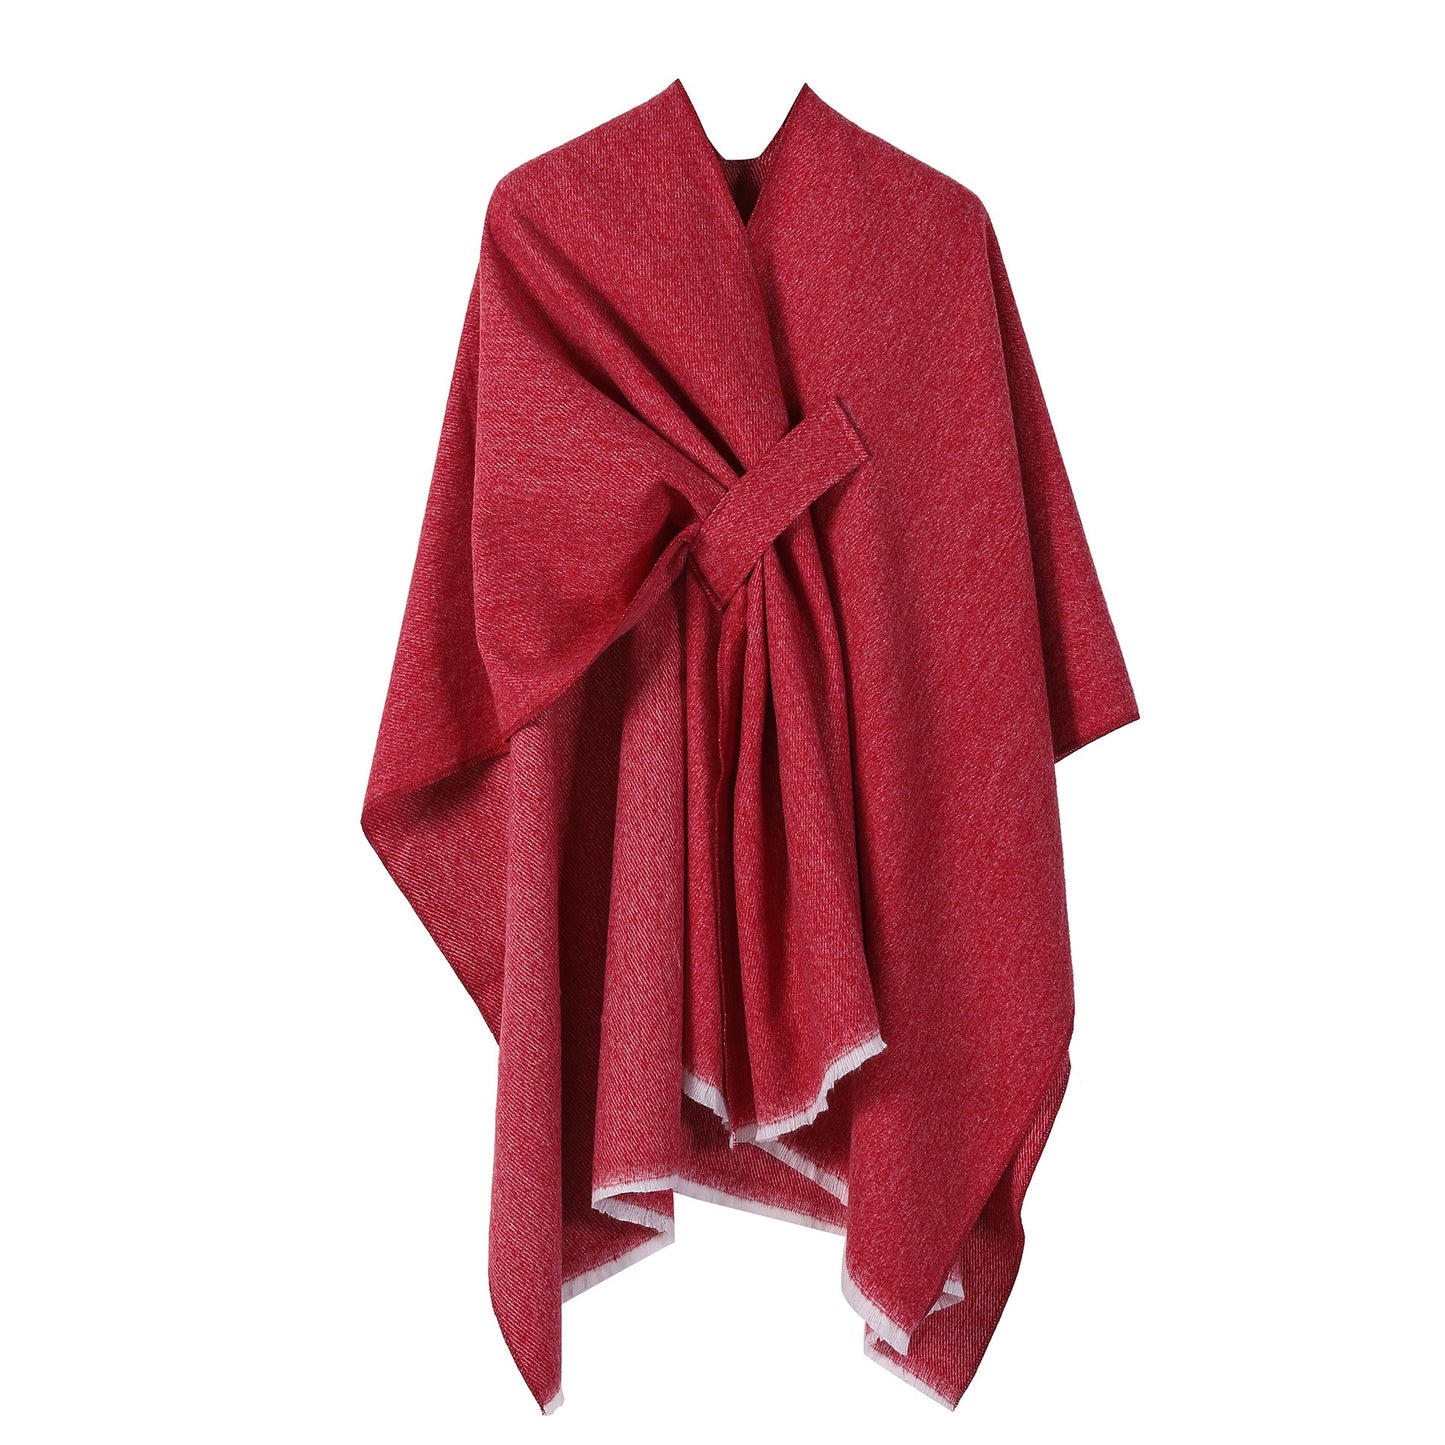 Autumn and winter solid color fashionable imitation cashmere shawl plain color split open cape